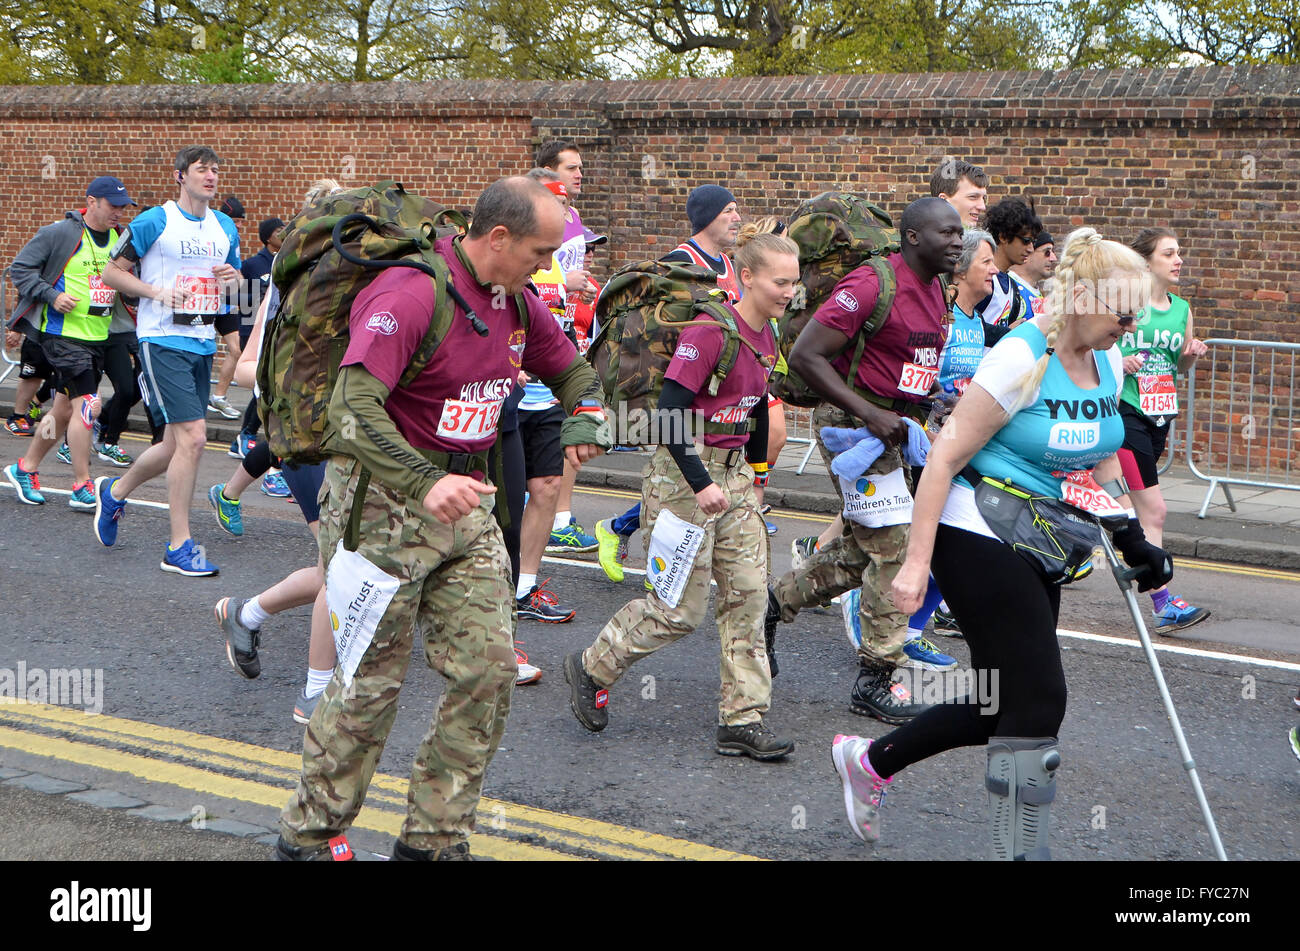 London, UK. 24. April 2016, Läufer in den Virgin London Marathon 2016 Stockfoto